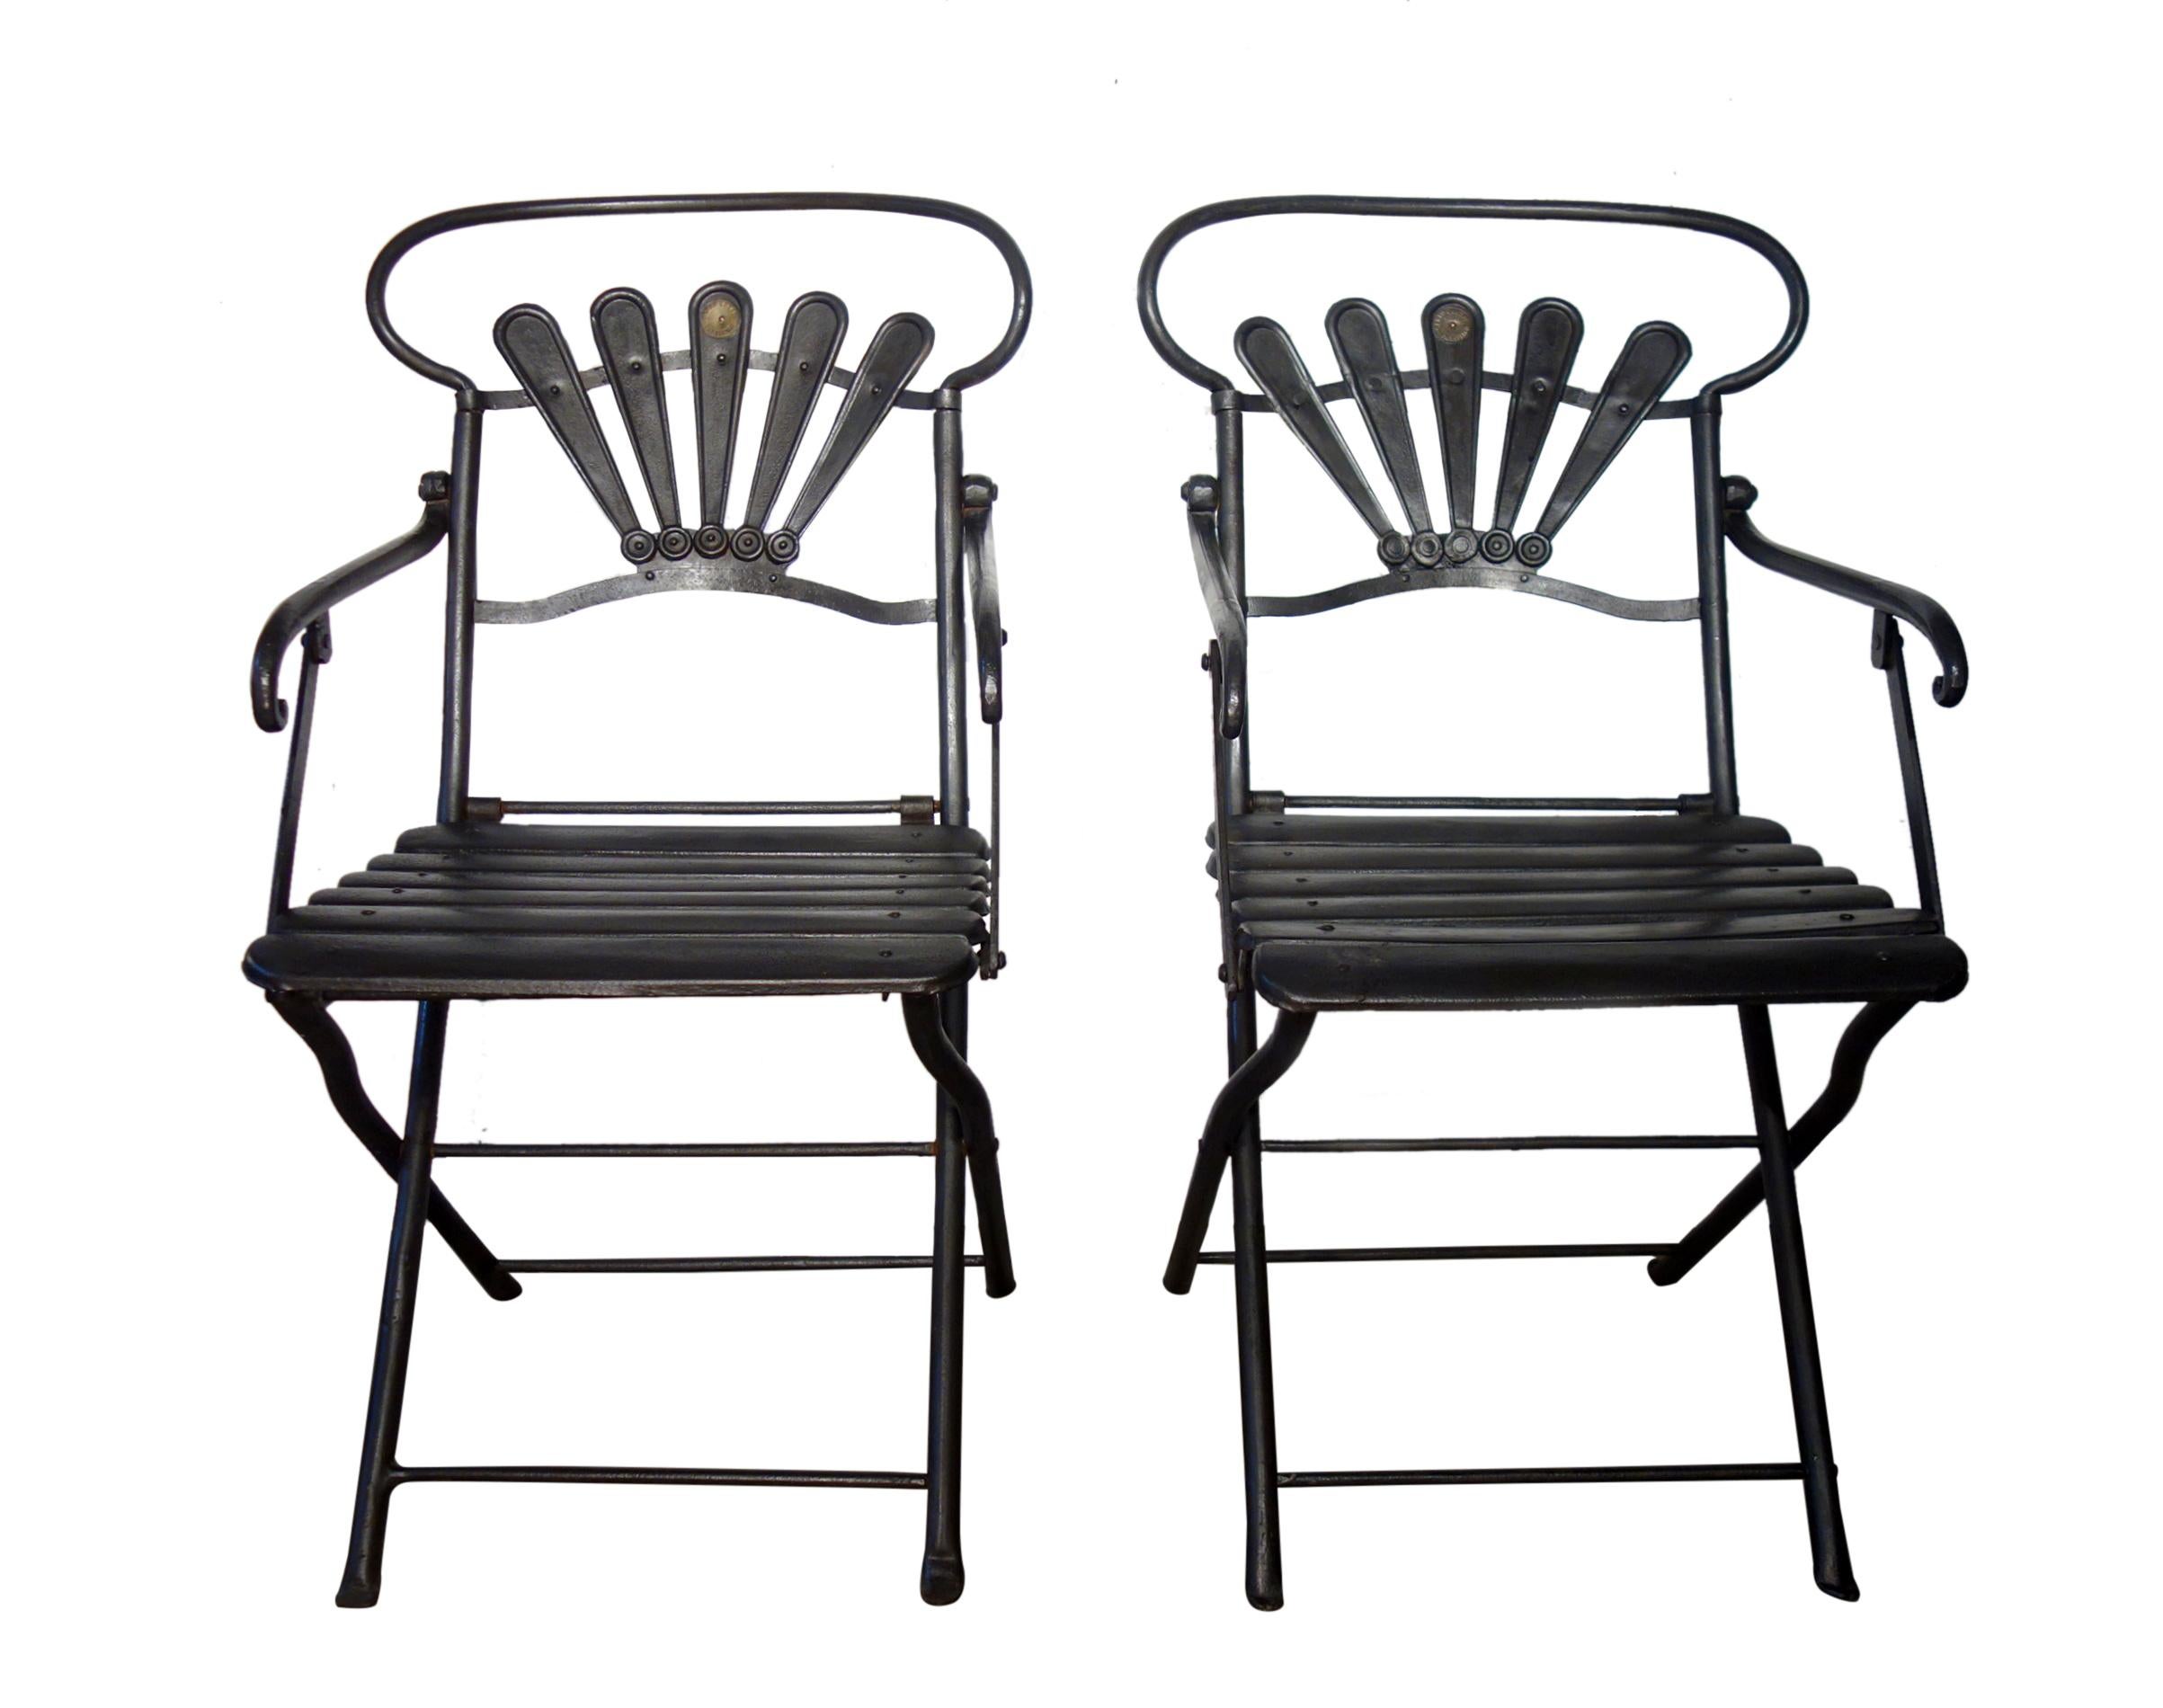 Confortable paire de fauteuils pliants en fer forgé de Carlo Foldes, fabriqués à la main dans le village de Parabiago, à Milan, en Italie.

Les détails stylistiques sont superbes : l'orbe incurvé du dossier de la chaise, le support de dossier en